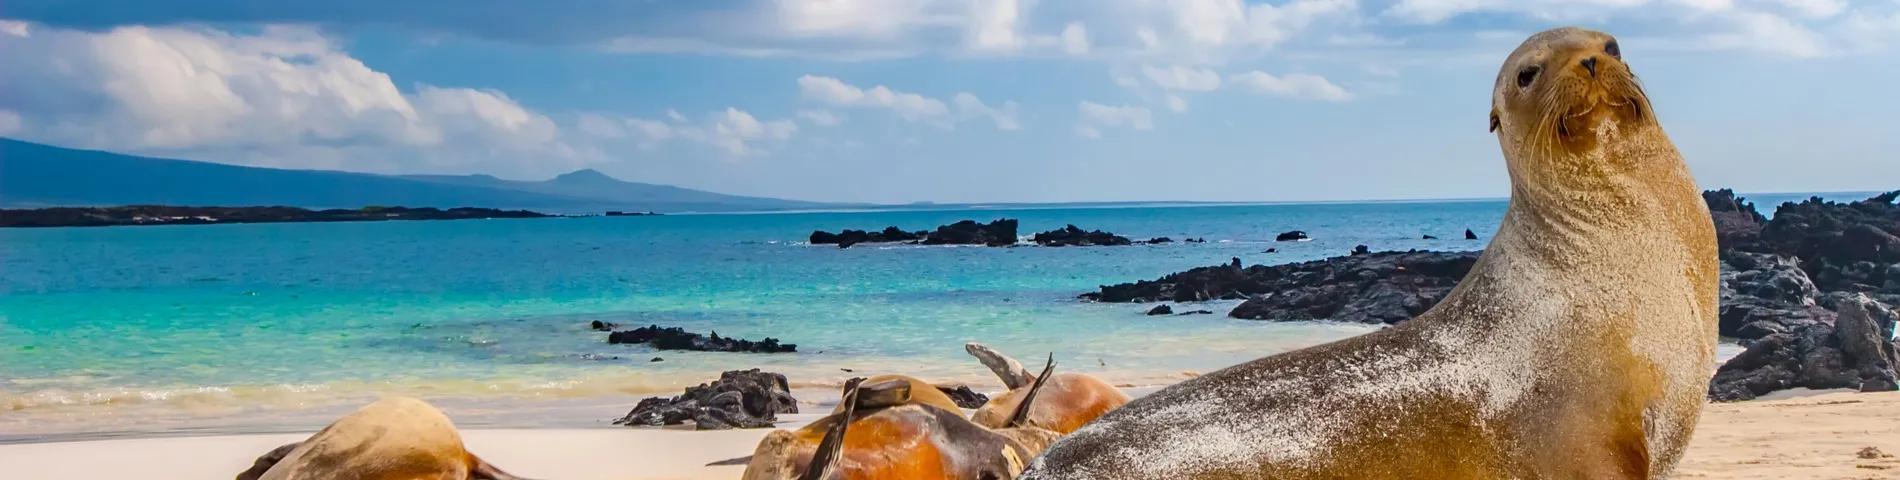 Ilhas Galápagos - 